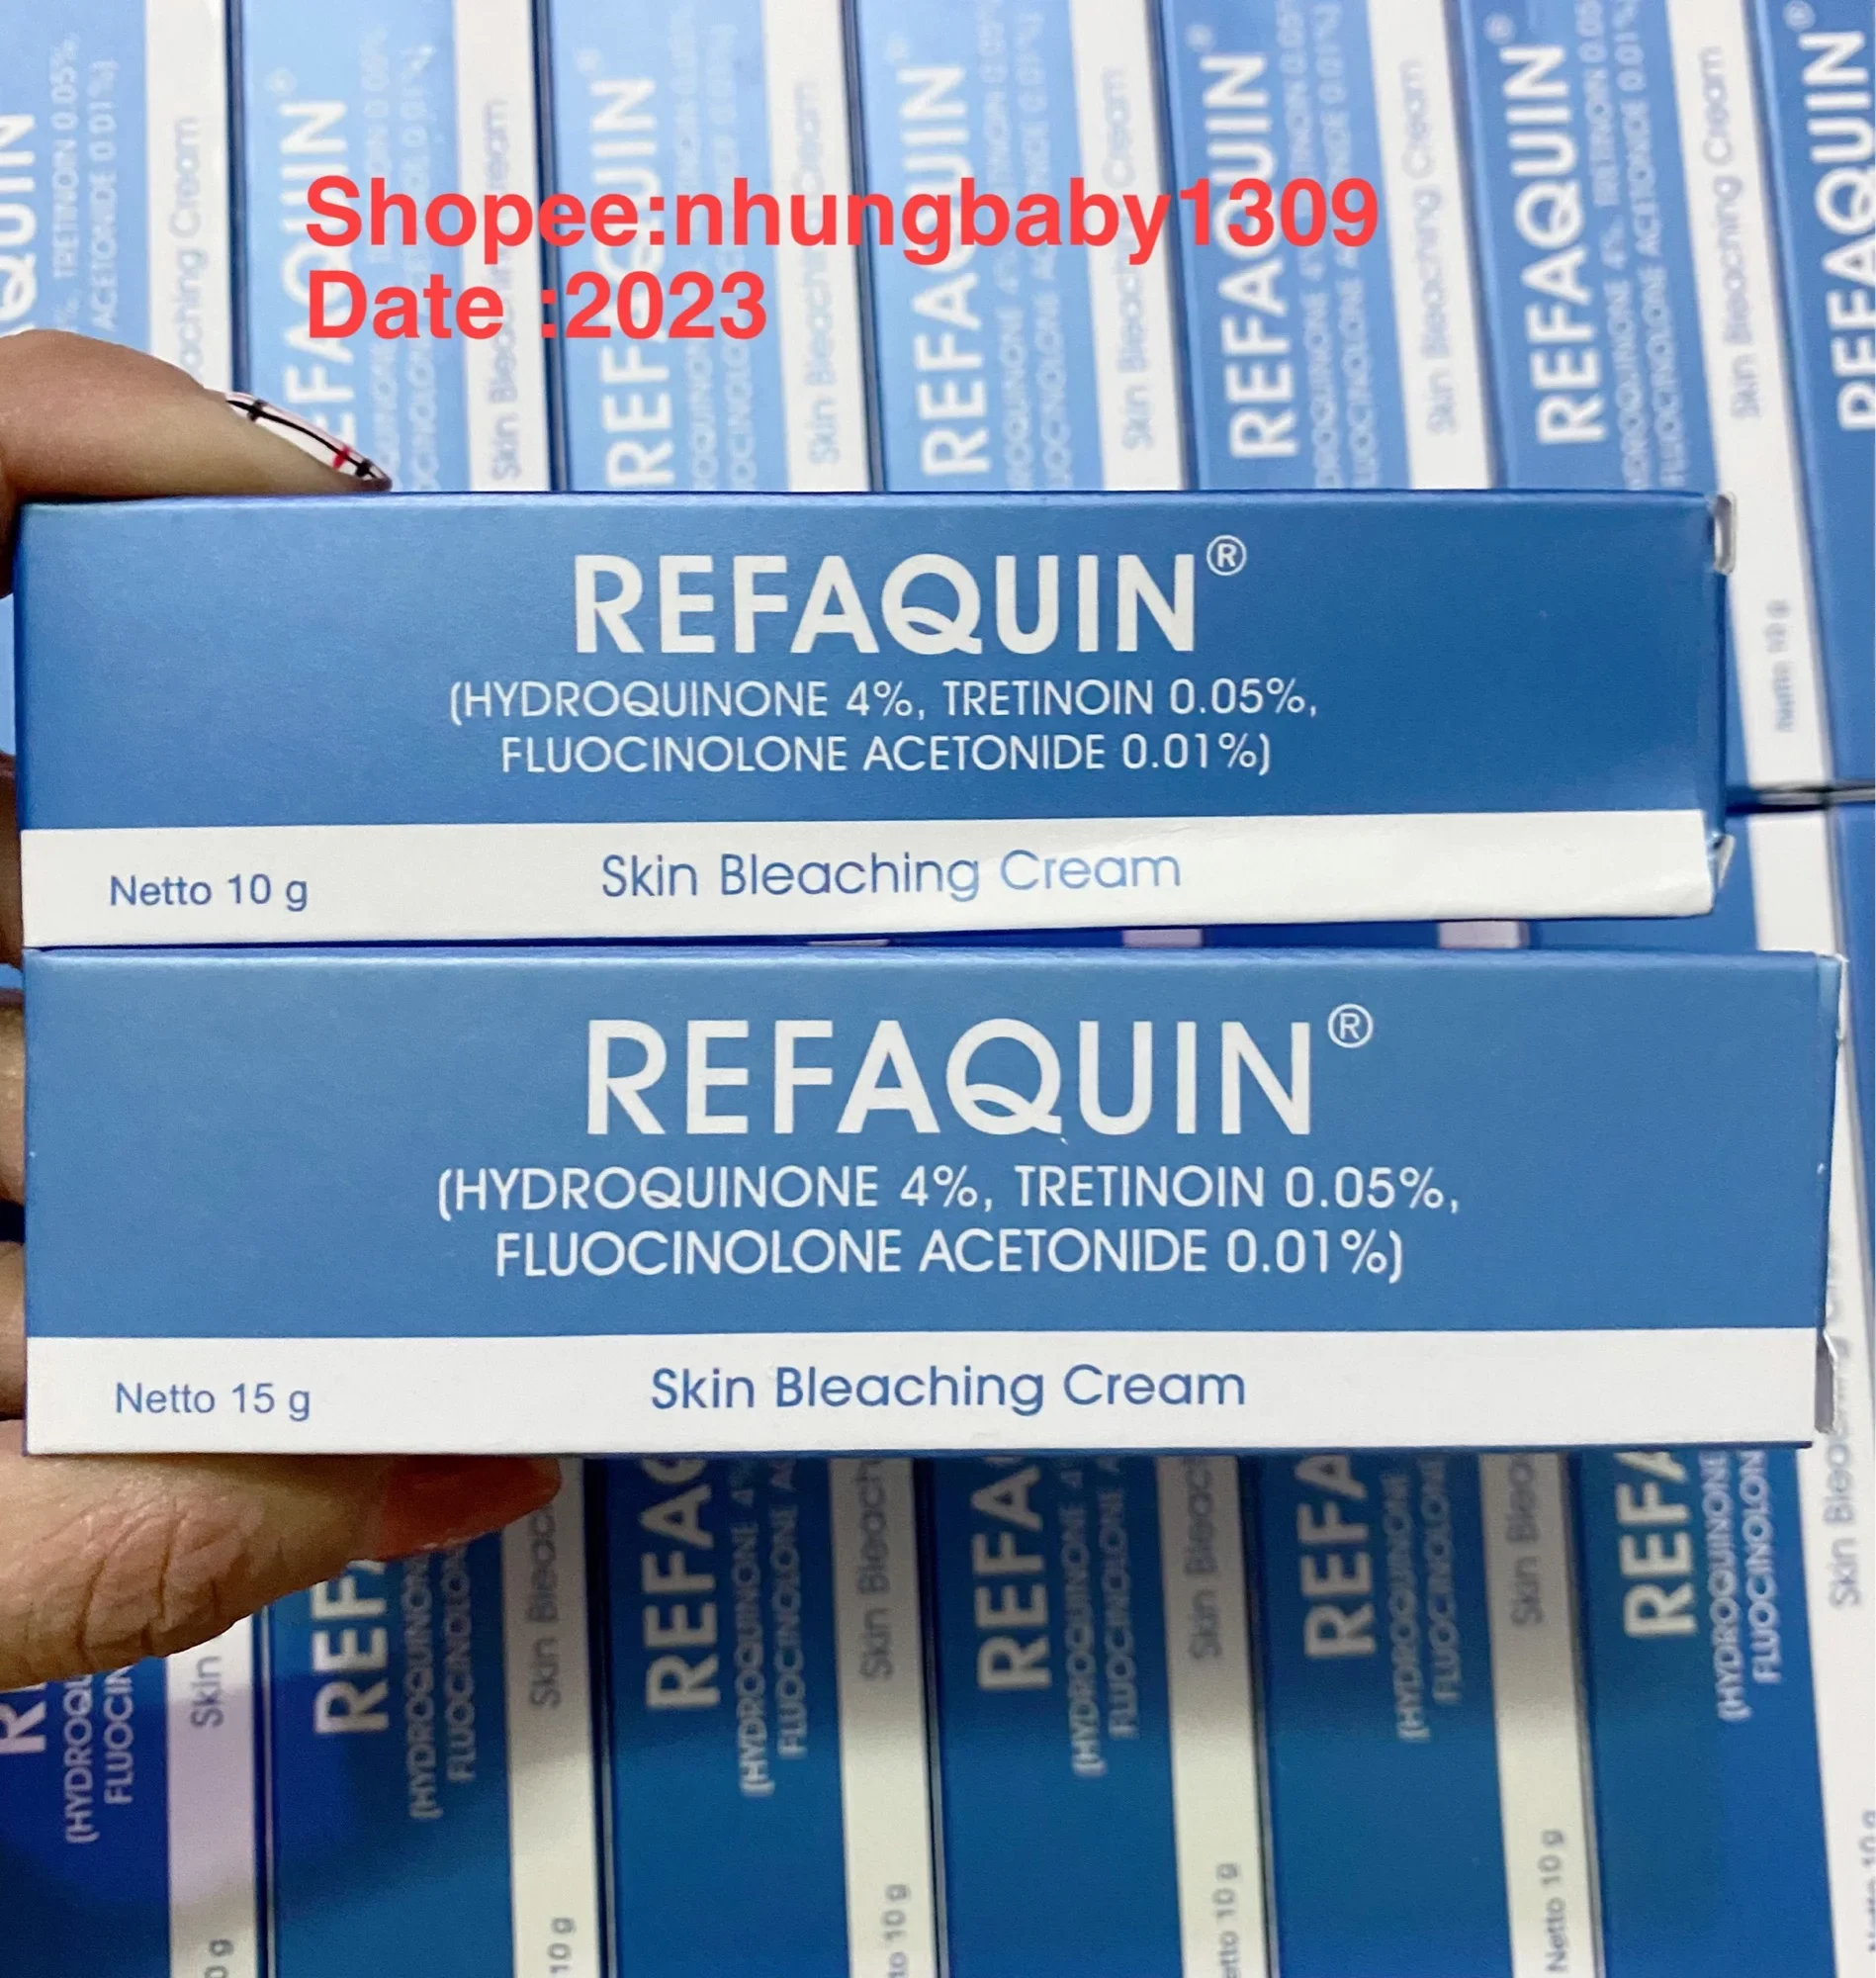 Kem dưỡng Refaquin H y d r o quinone 4% Tretinoin 0,05 % trắng da.